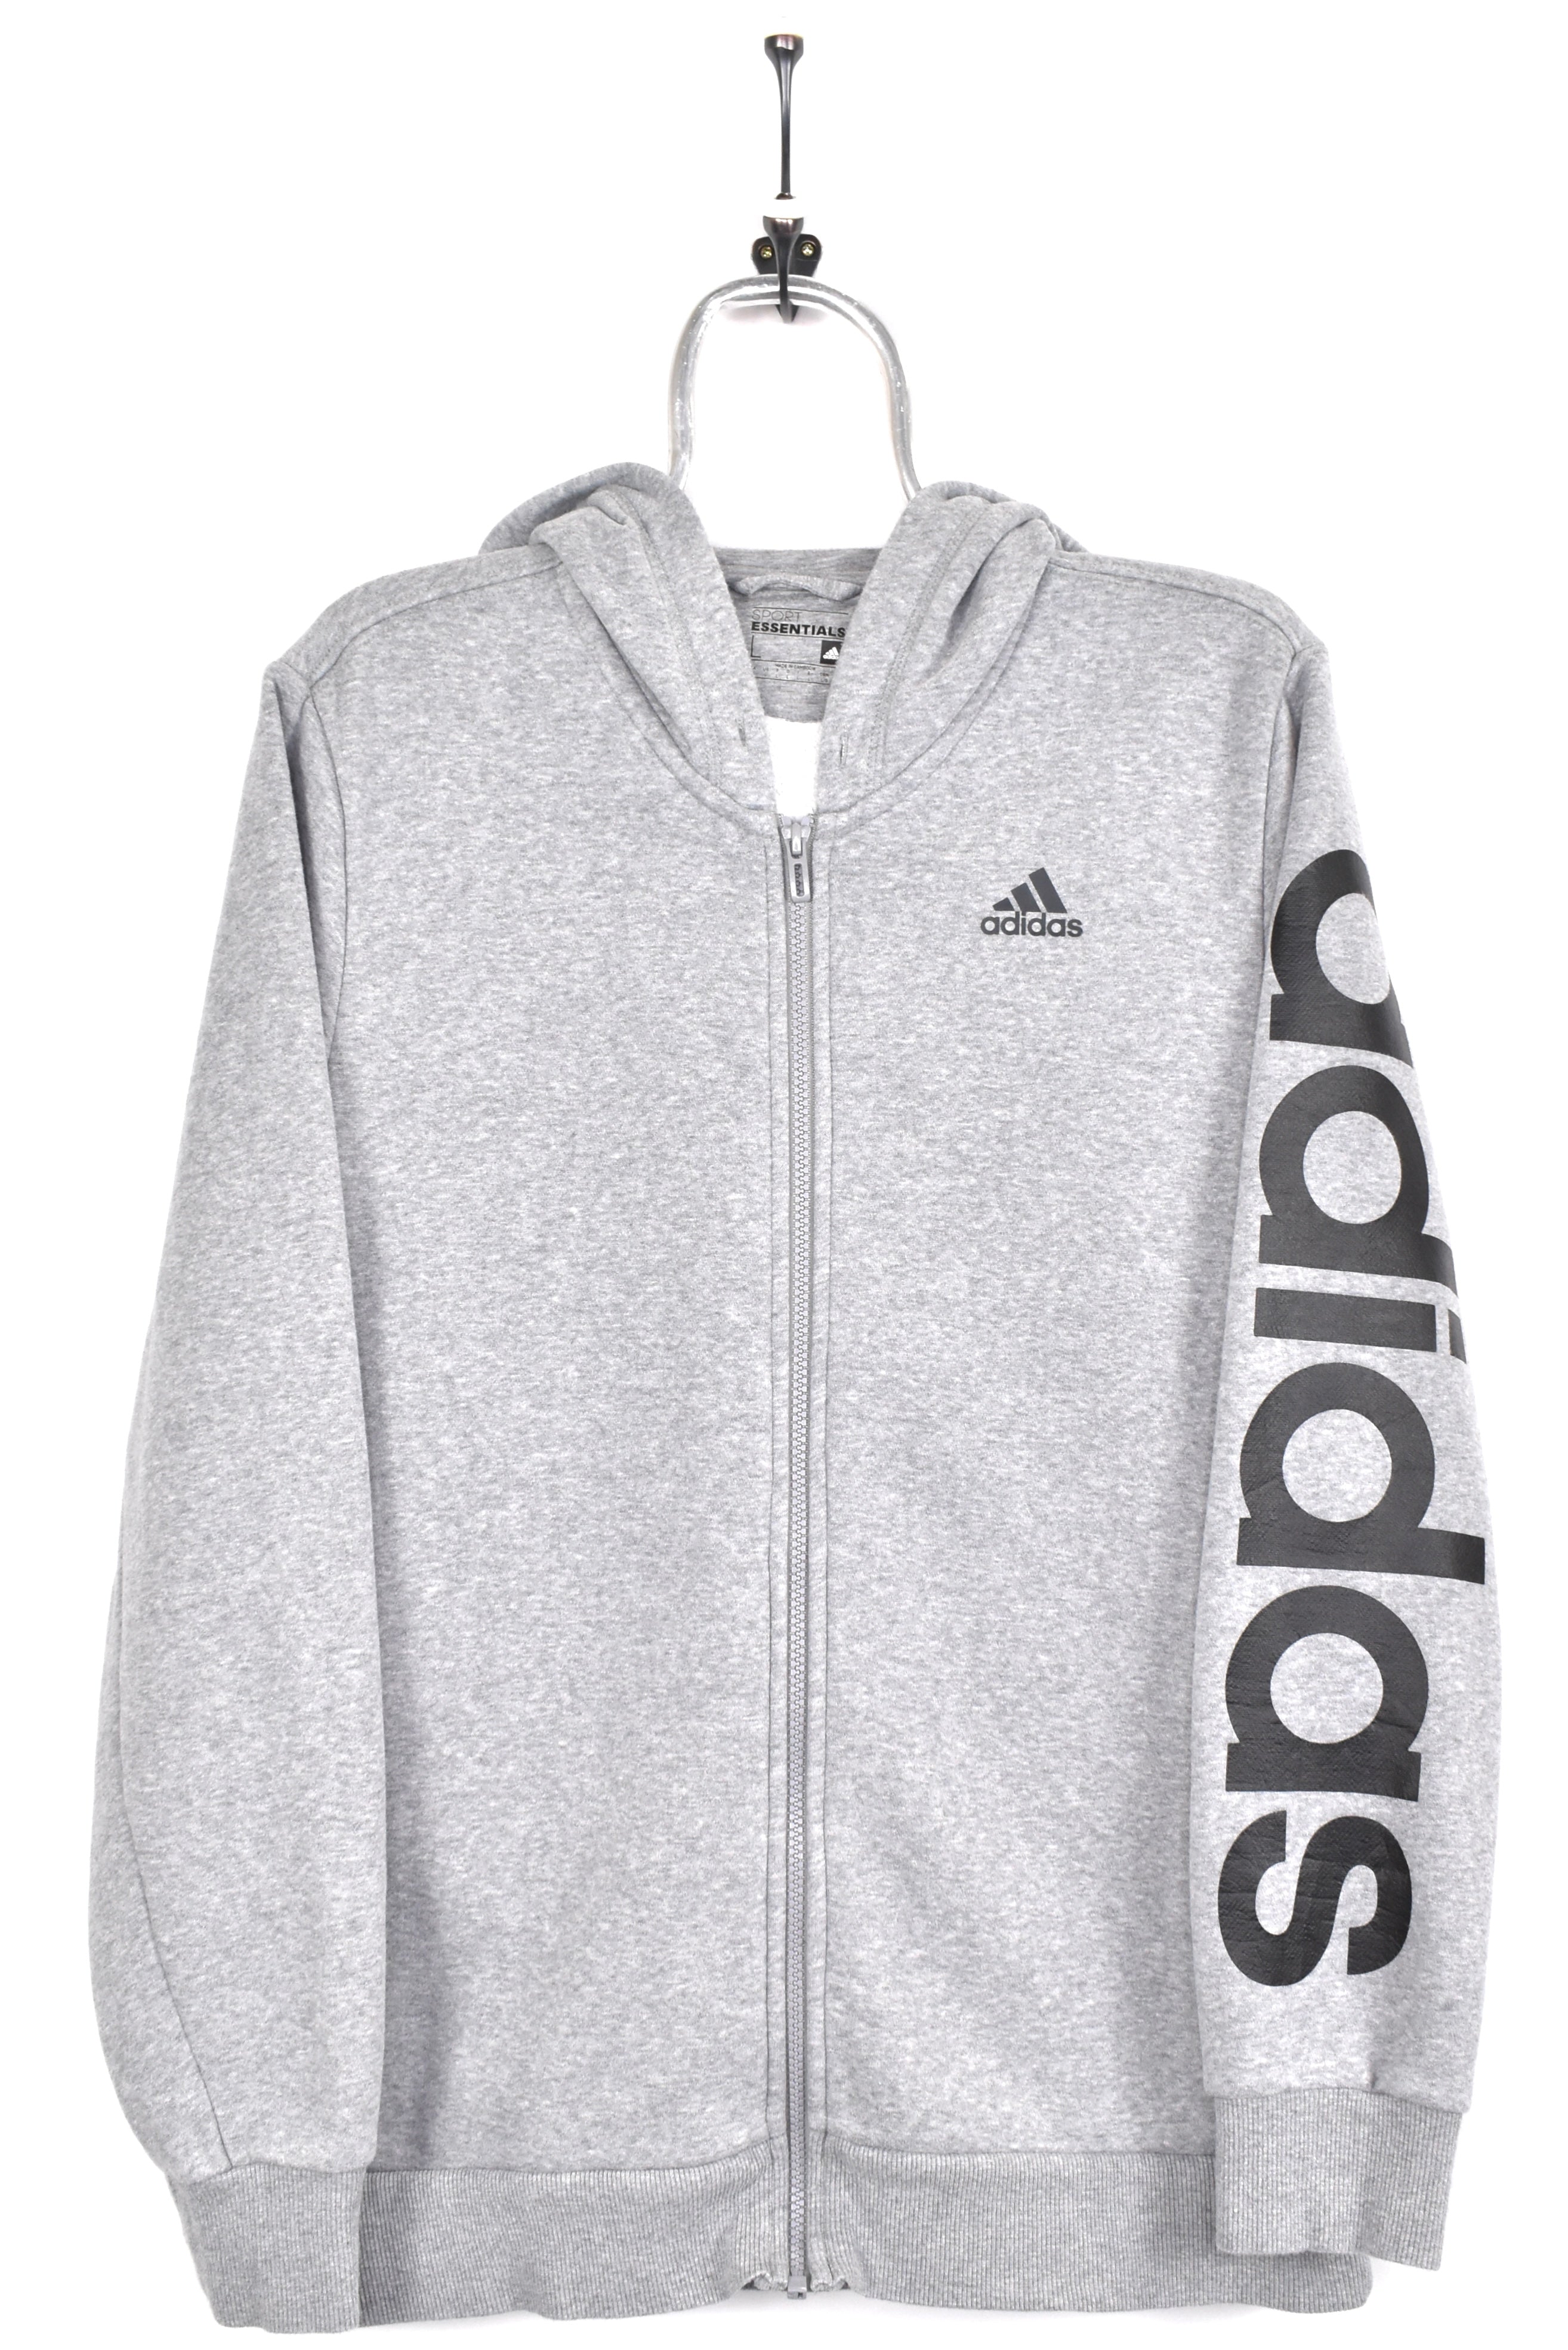 Modern Adidas hoodie, grey graphic sweatshirt - AU Medium ADIDAS